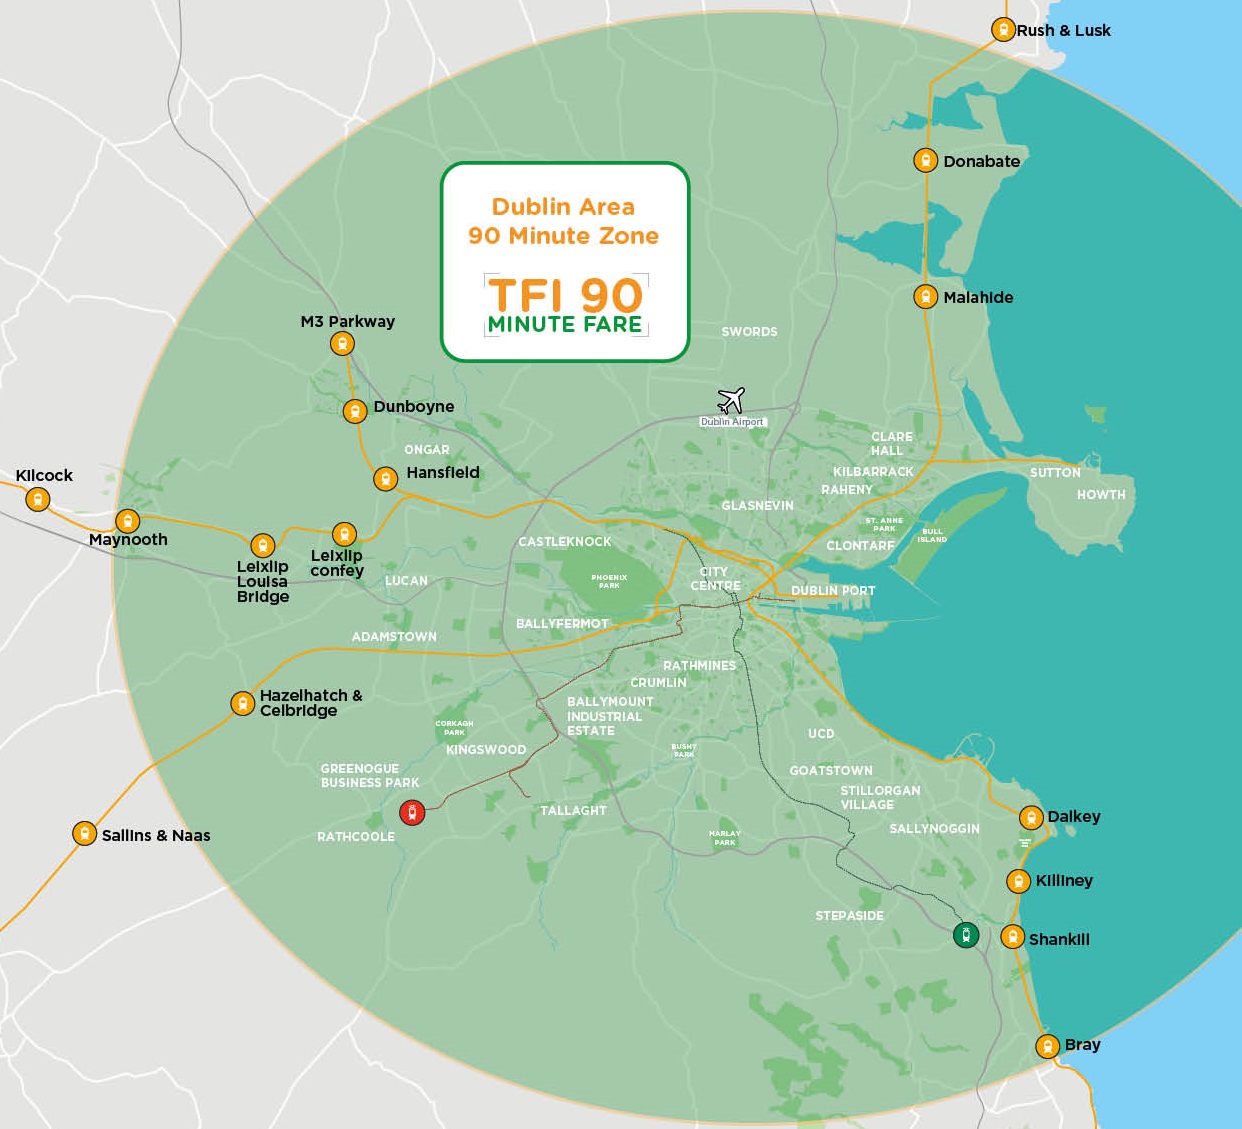 The 90-minute fare zone in Dublin city